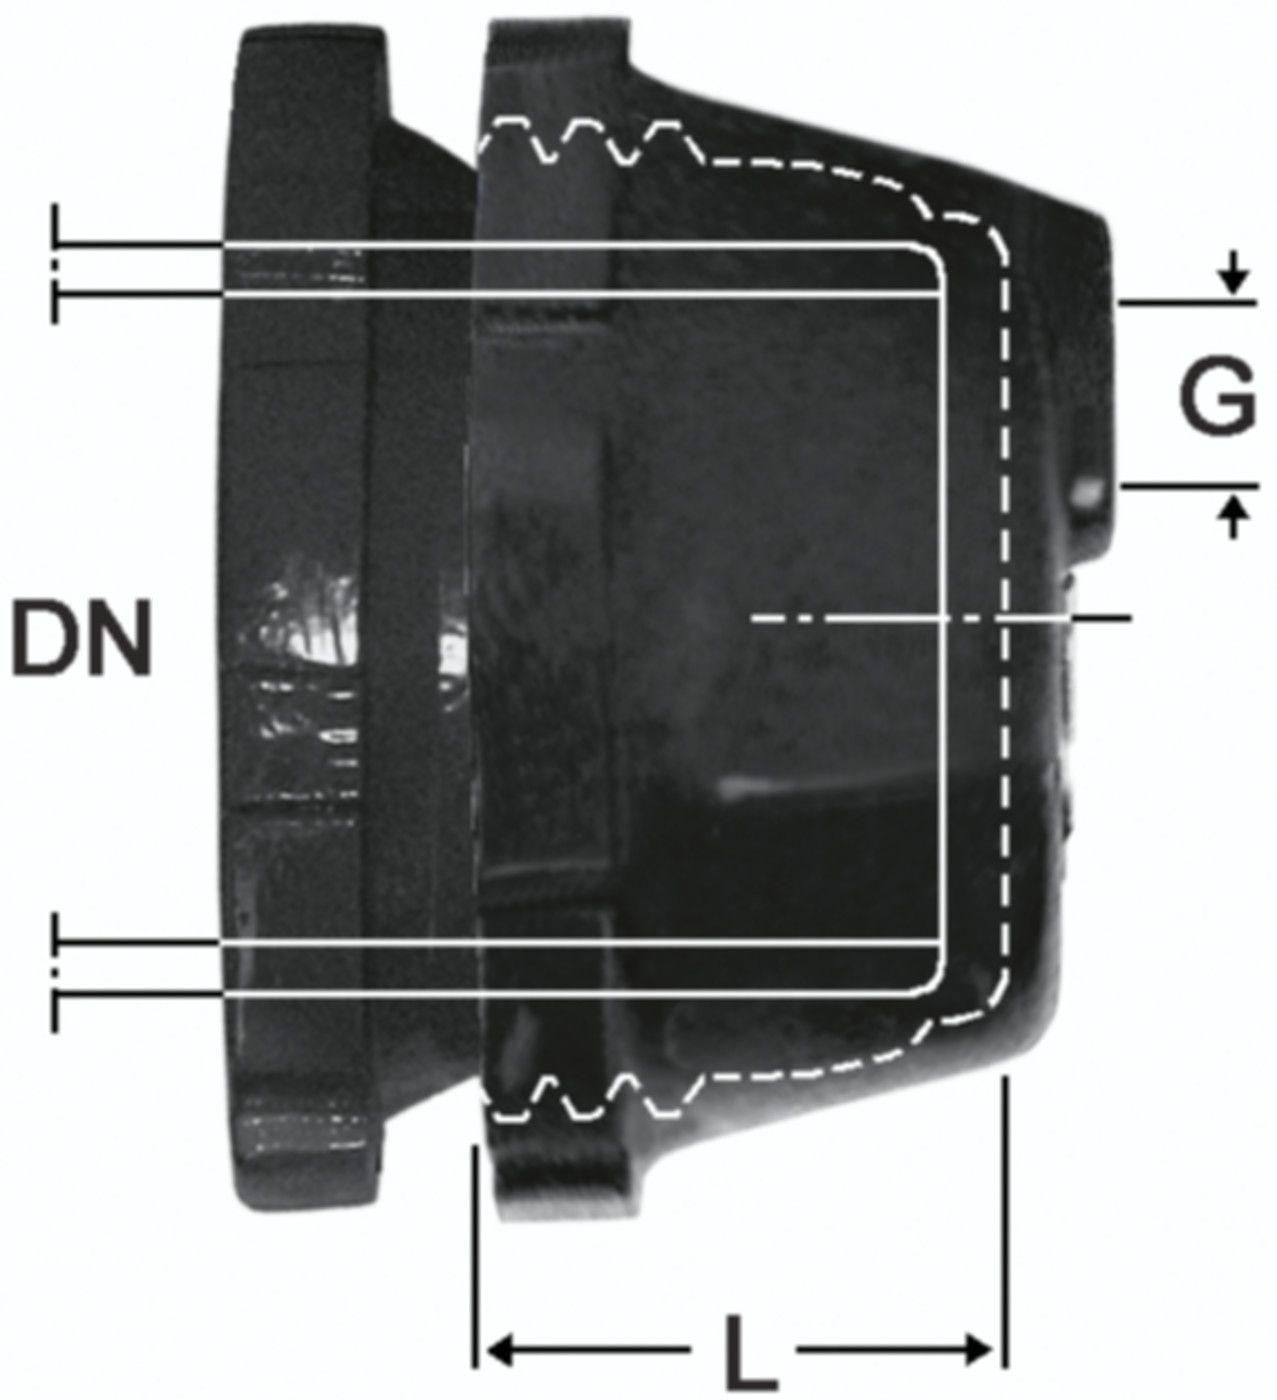 SM-Verschlusskappe Fig. 2395 DN 50 - 1 1/4" - Von Roll Schraubmuffenformstücke